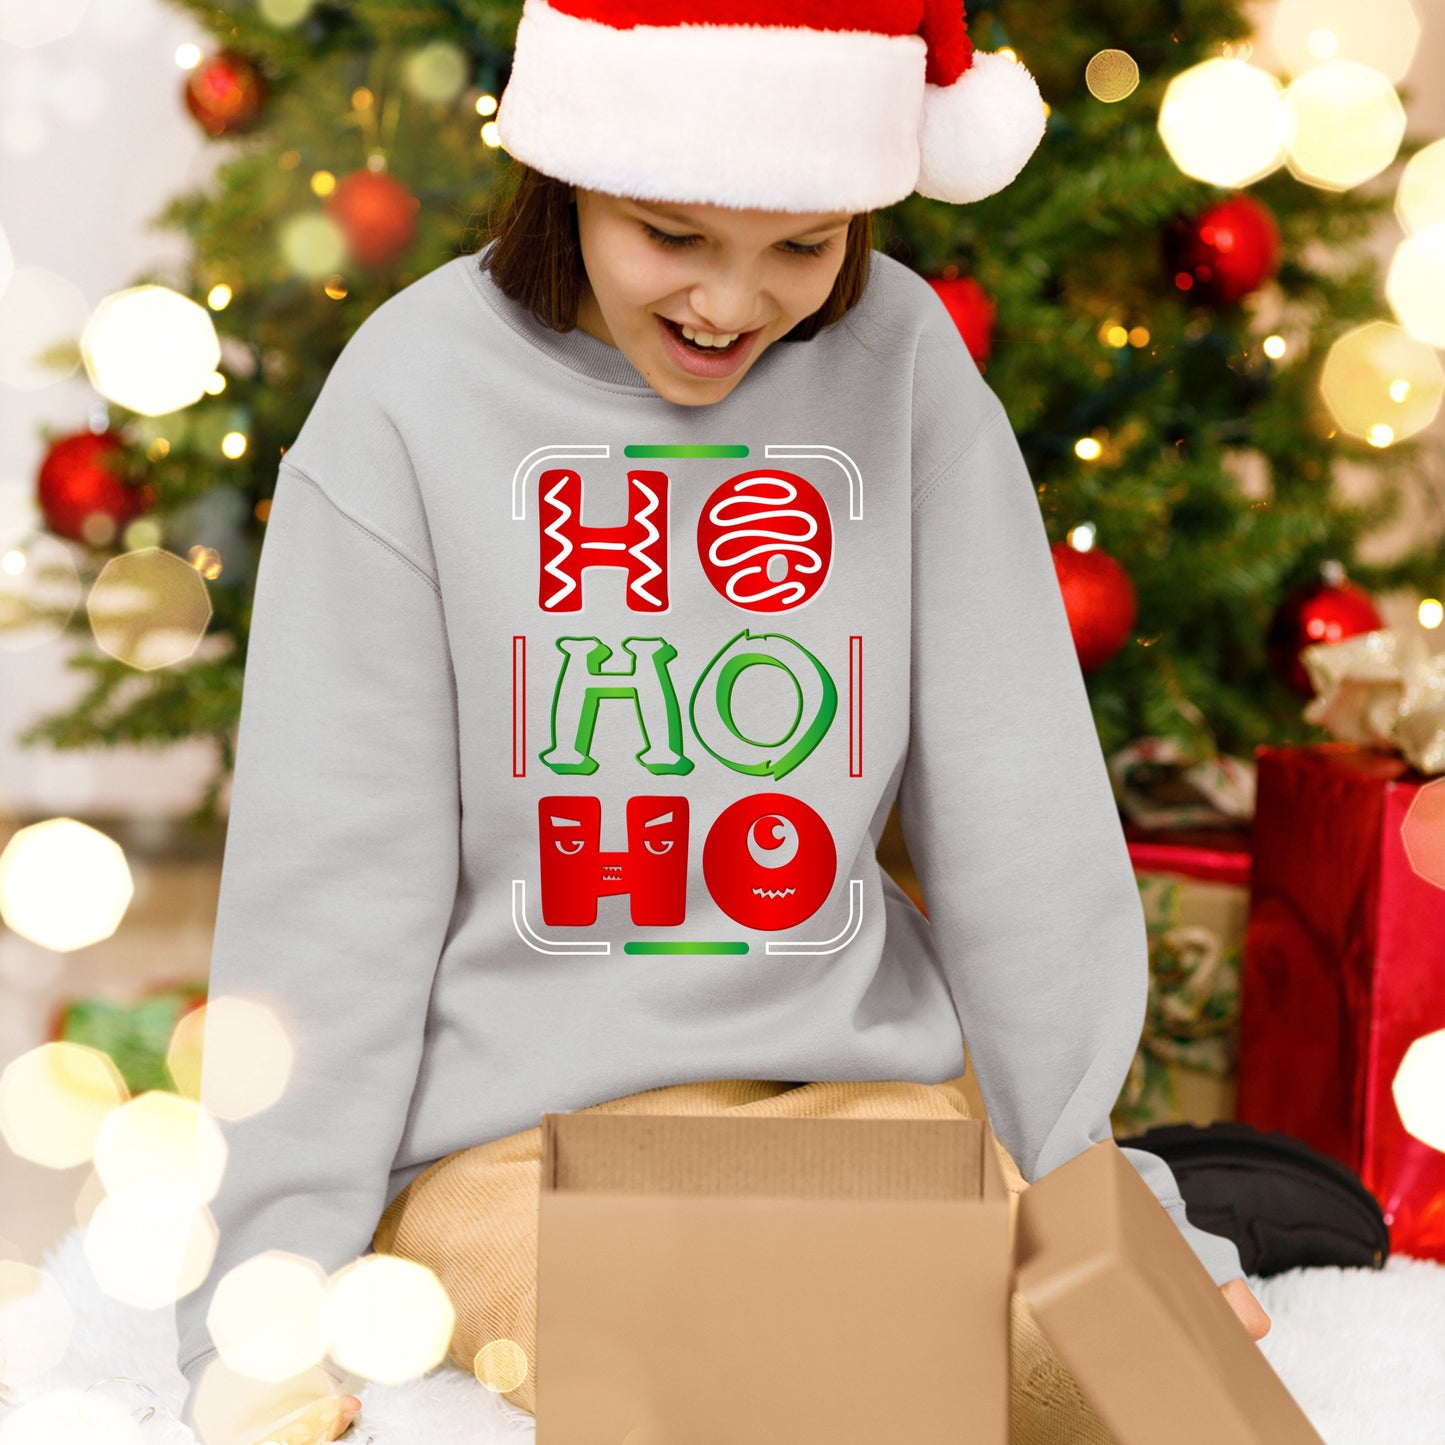 Ho Ho Ho, Christmas Sweatshirt, Christmas Long Sleeves, Christmas Sweater, Christmas Crewneck For Youth, Christmas Present